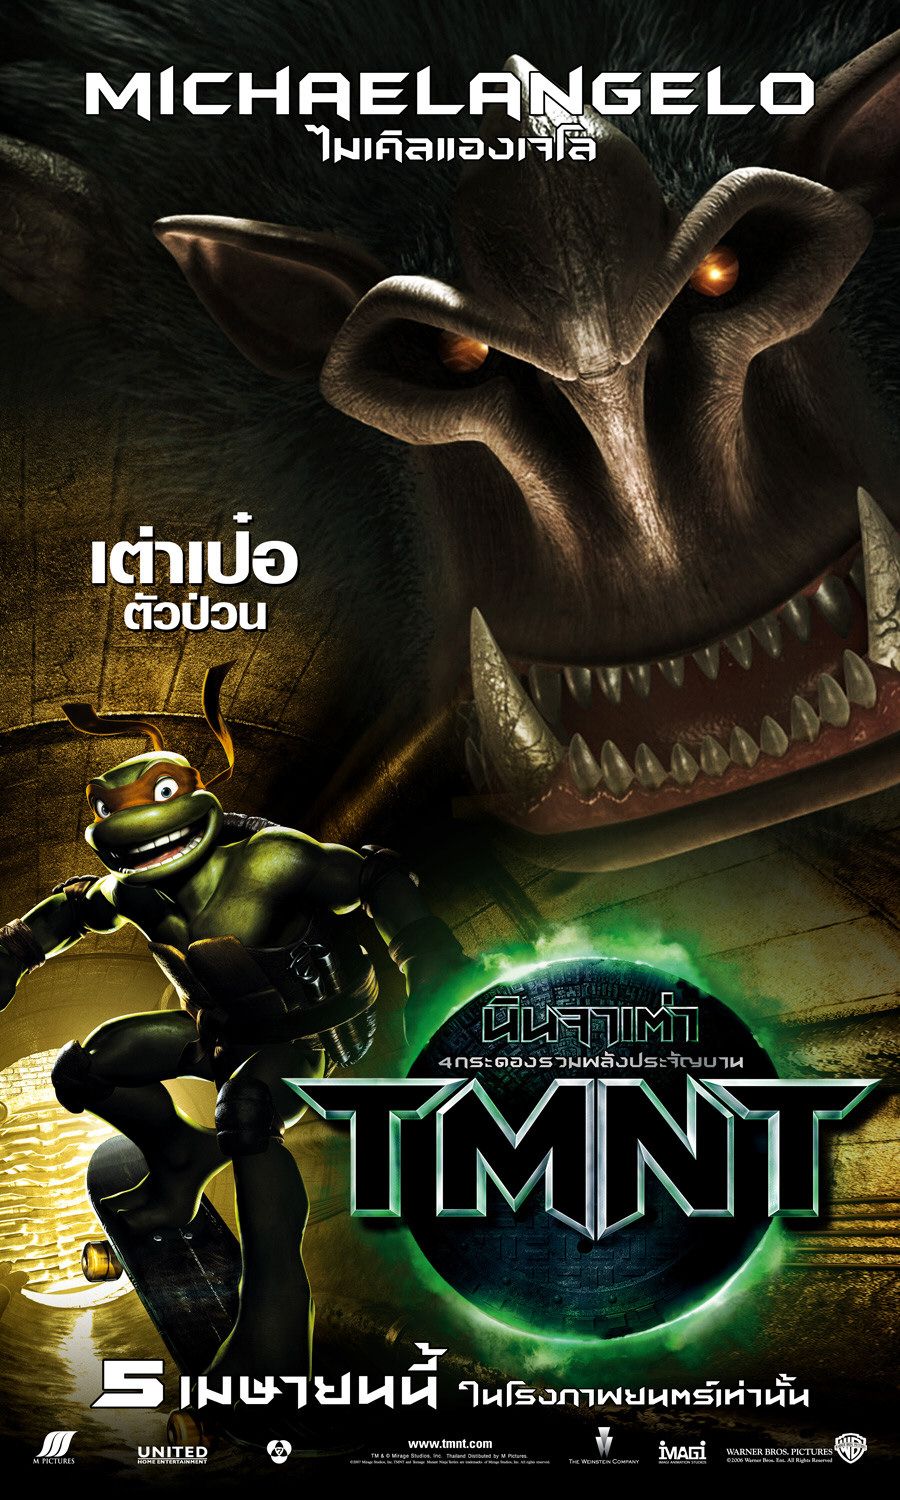 Extra Large Movie Poster Image for Teenage Mutant Ninja Turtles (#11 of 16)